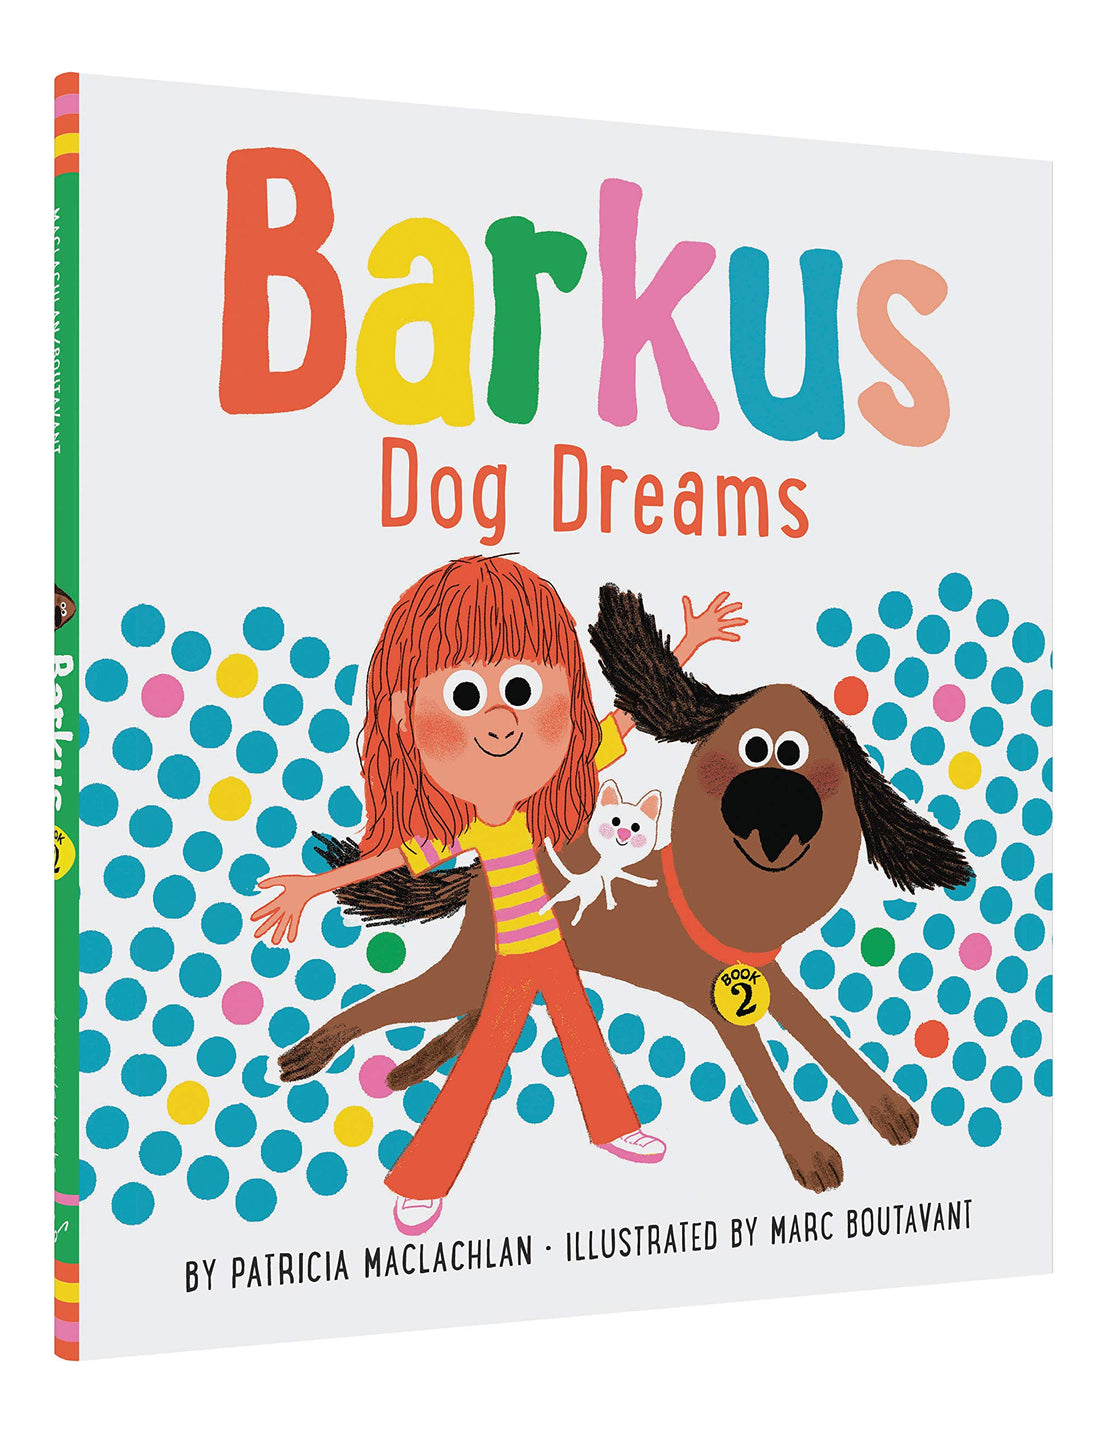 Barkus Dog Dreams - Parkette.